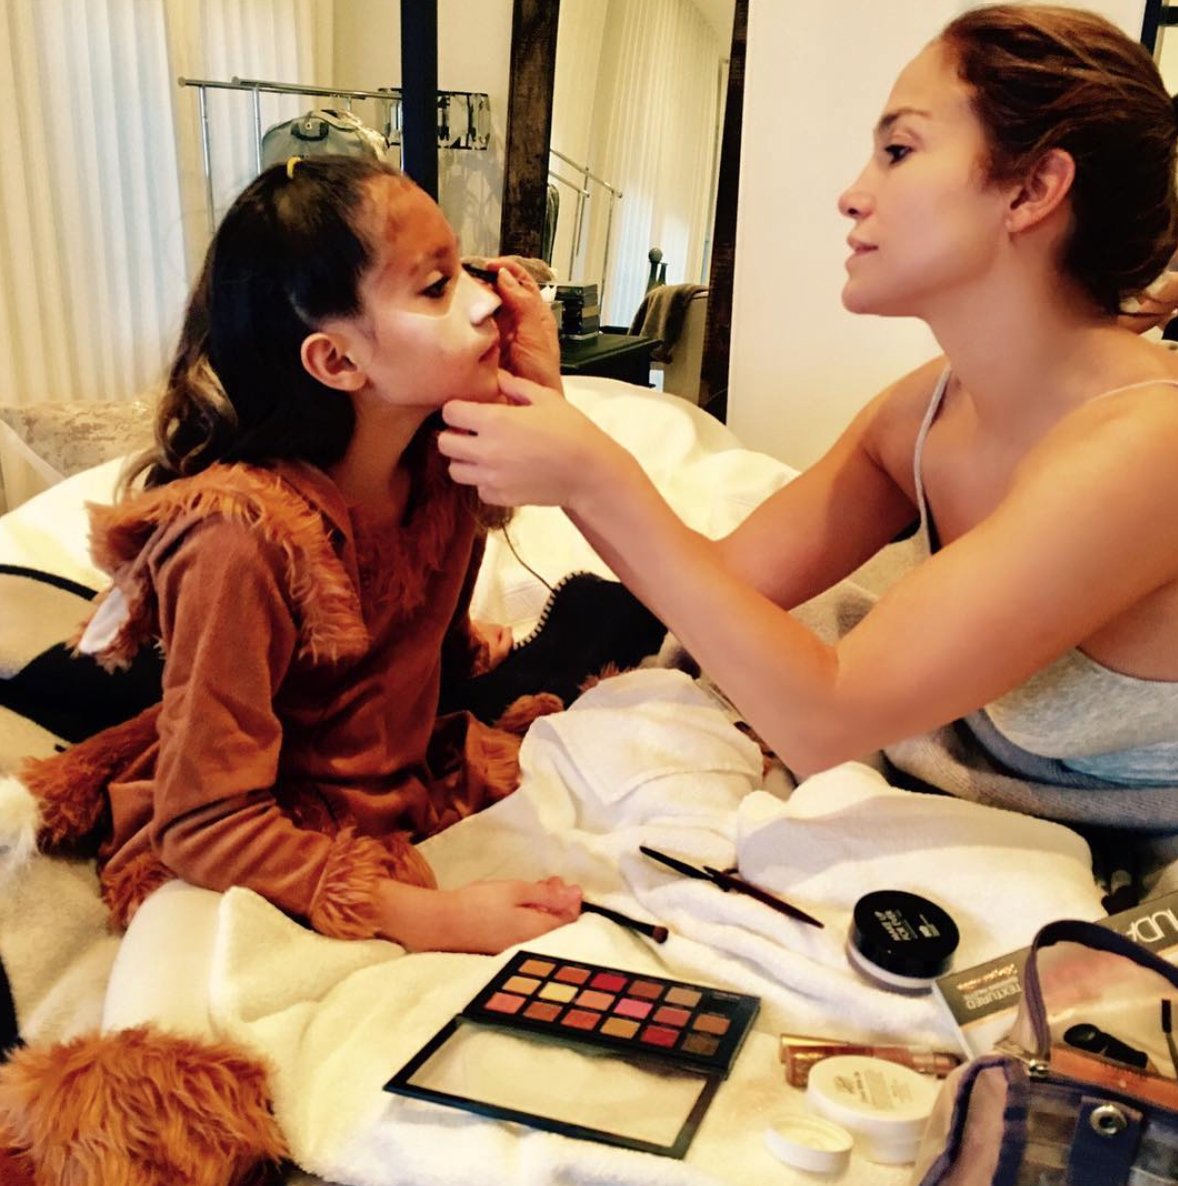 Mamá makeup duties...#happyhalloween???????? https://t.co/5puwU5eenS